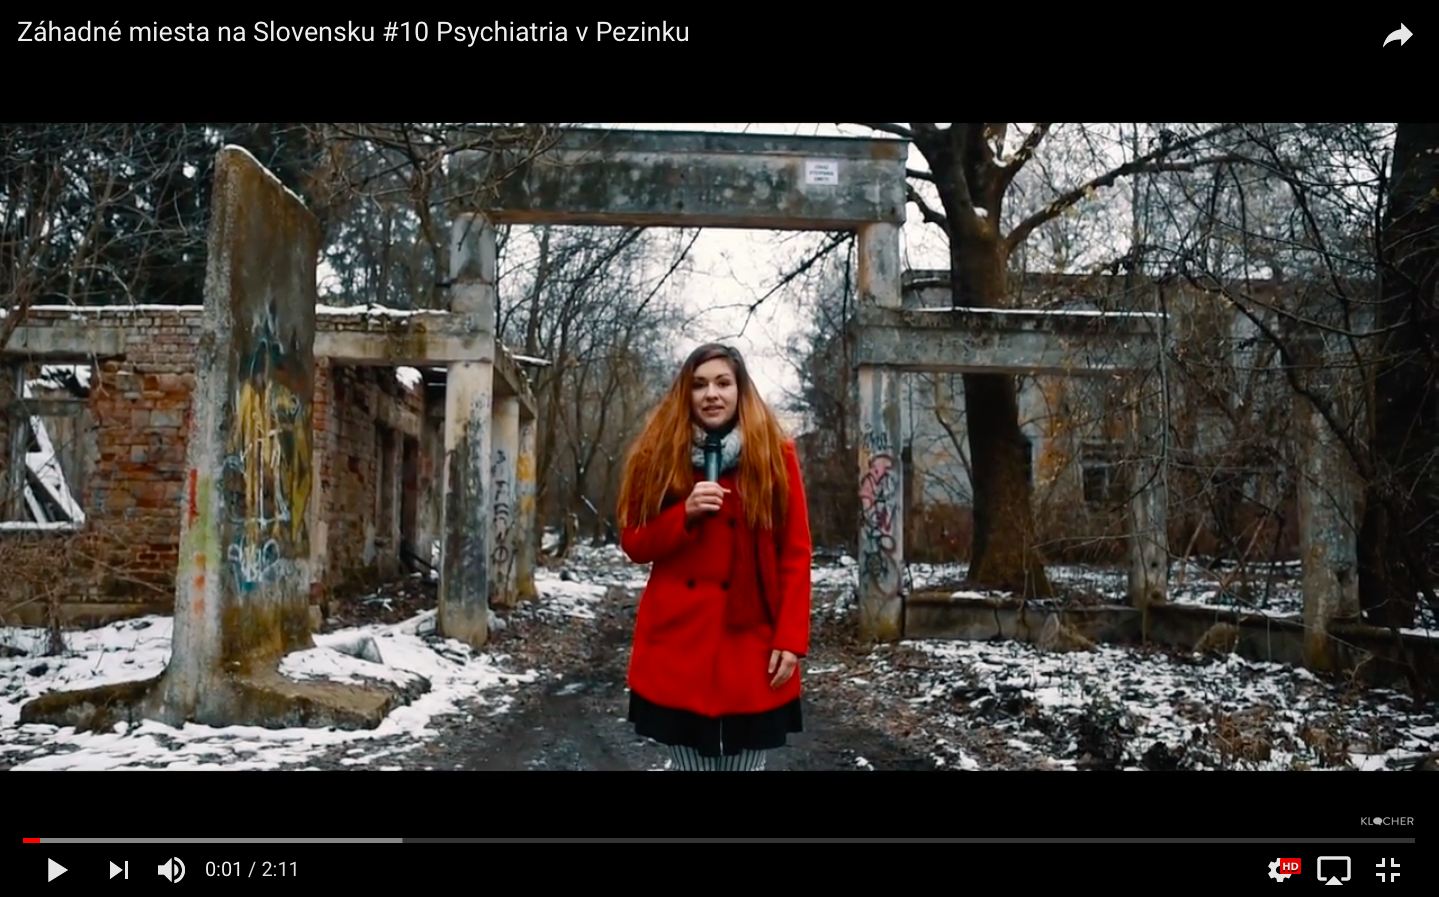 VIDEO: Záhadné miesta na Slovensku #10 Psychiatria v Pezinku